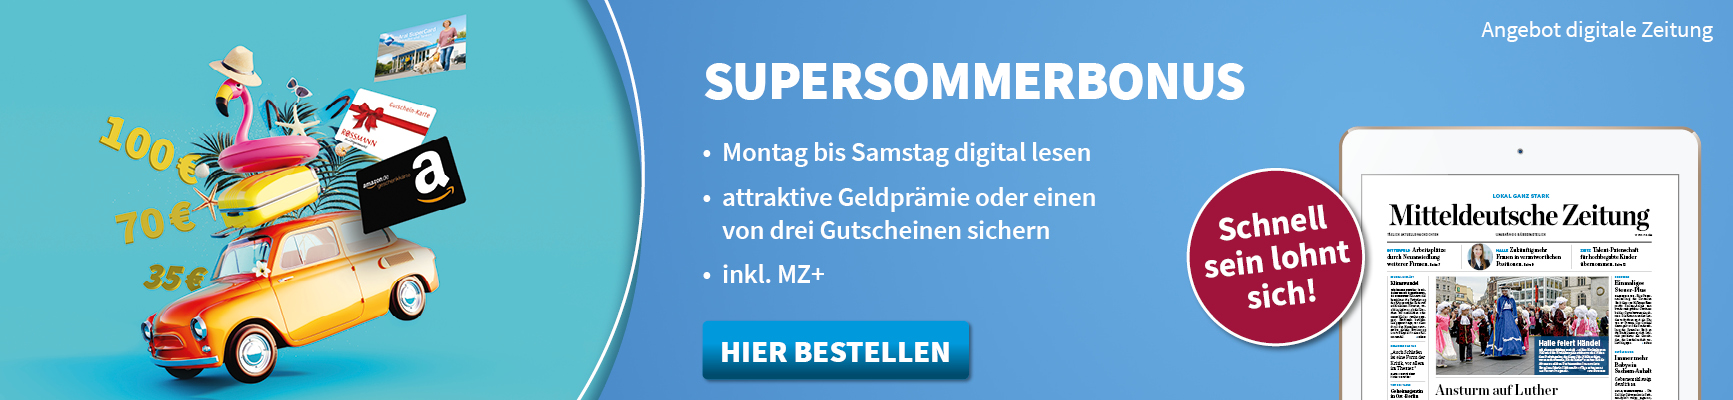 Supersommerbonus - Jetzt bis 14.07. bestellen und 70 € sichern!